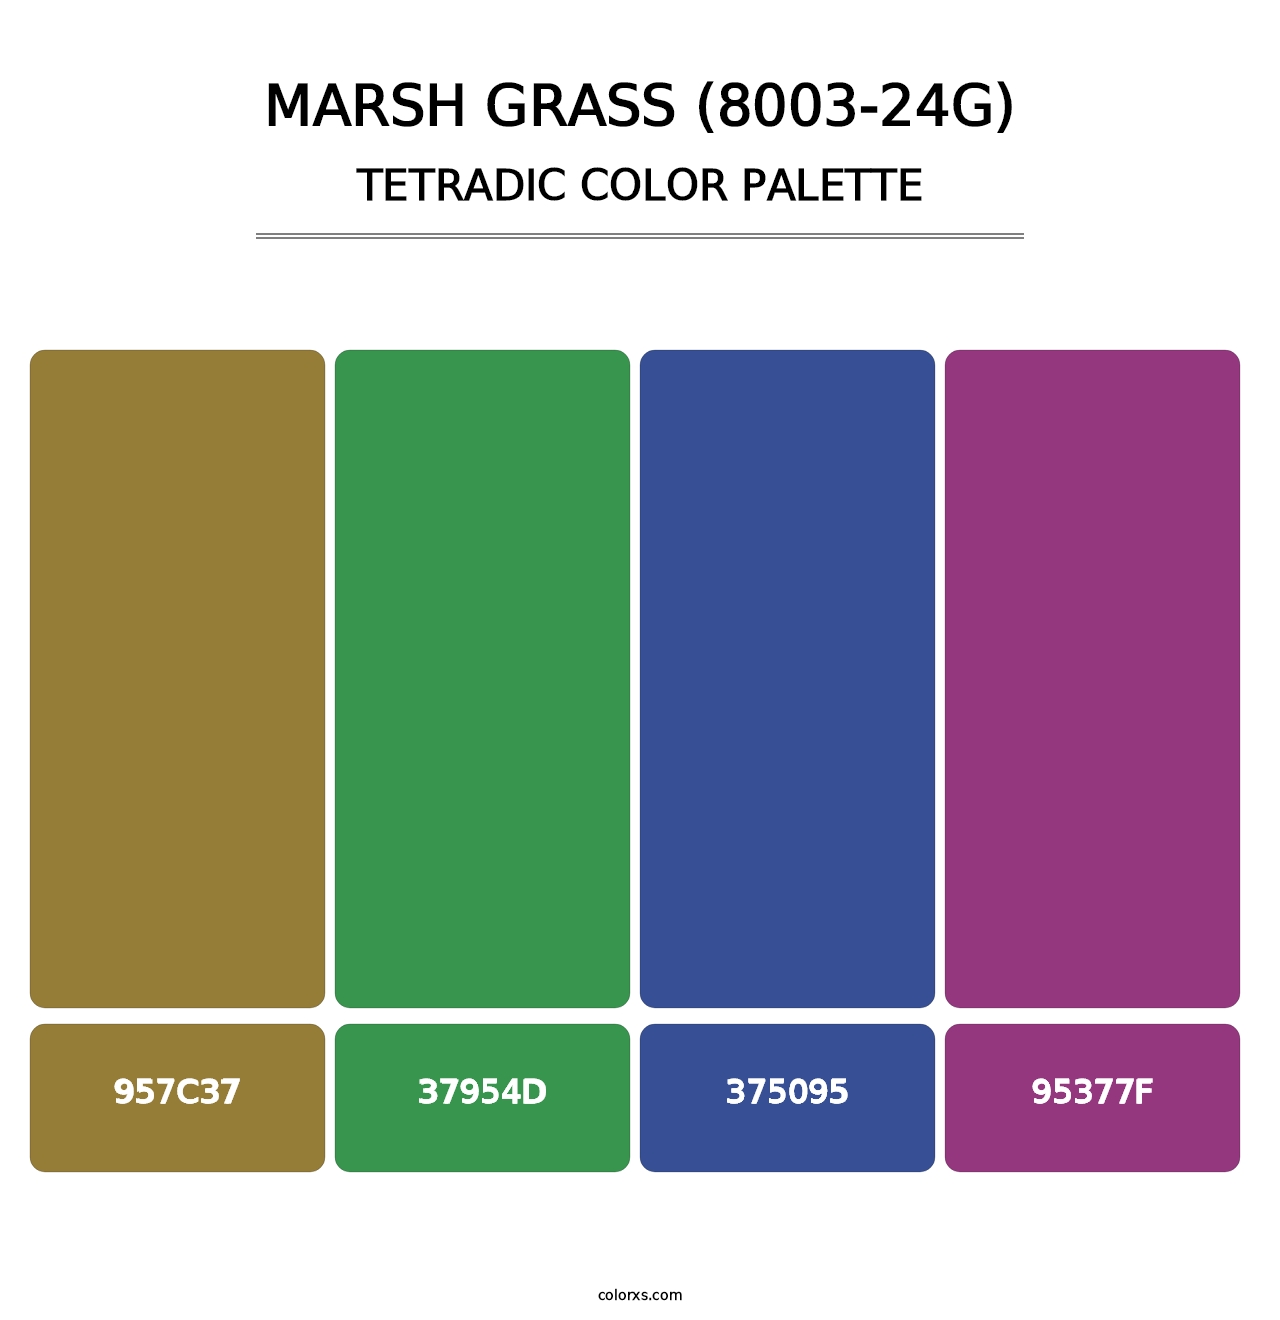 Marsh Grass (8003-24G) - Tetradic Color Palette